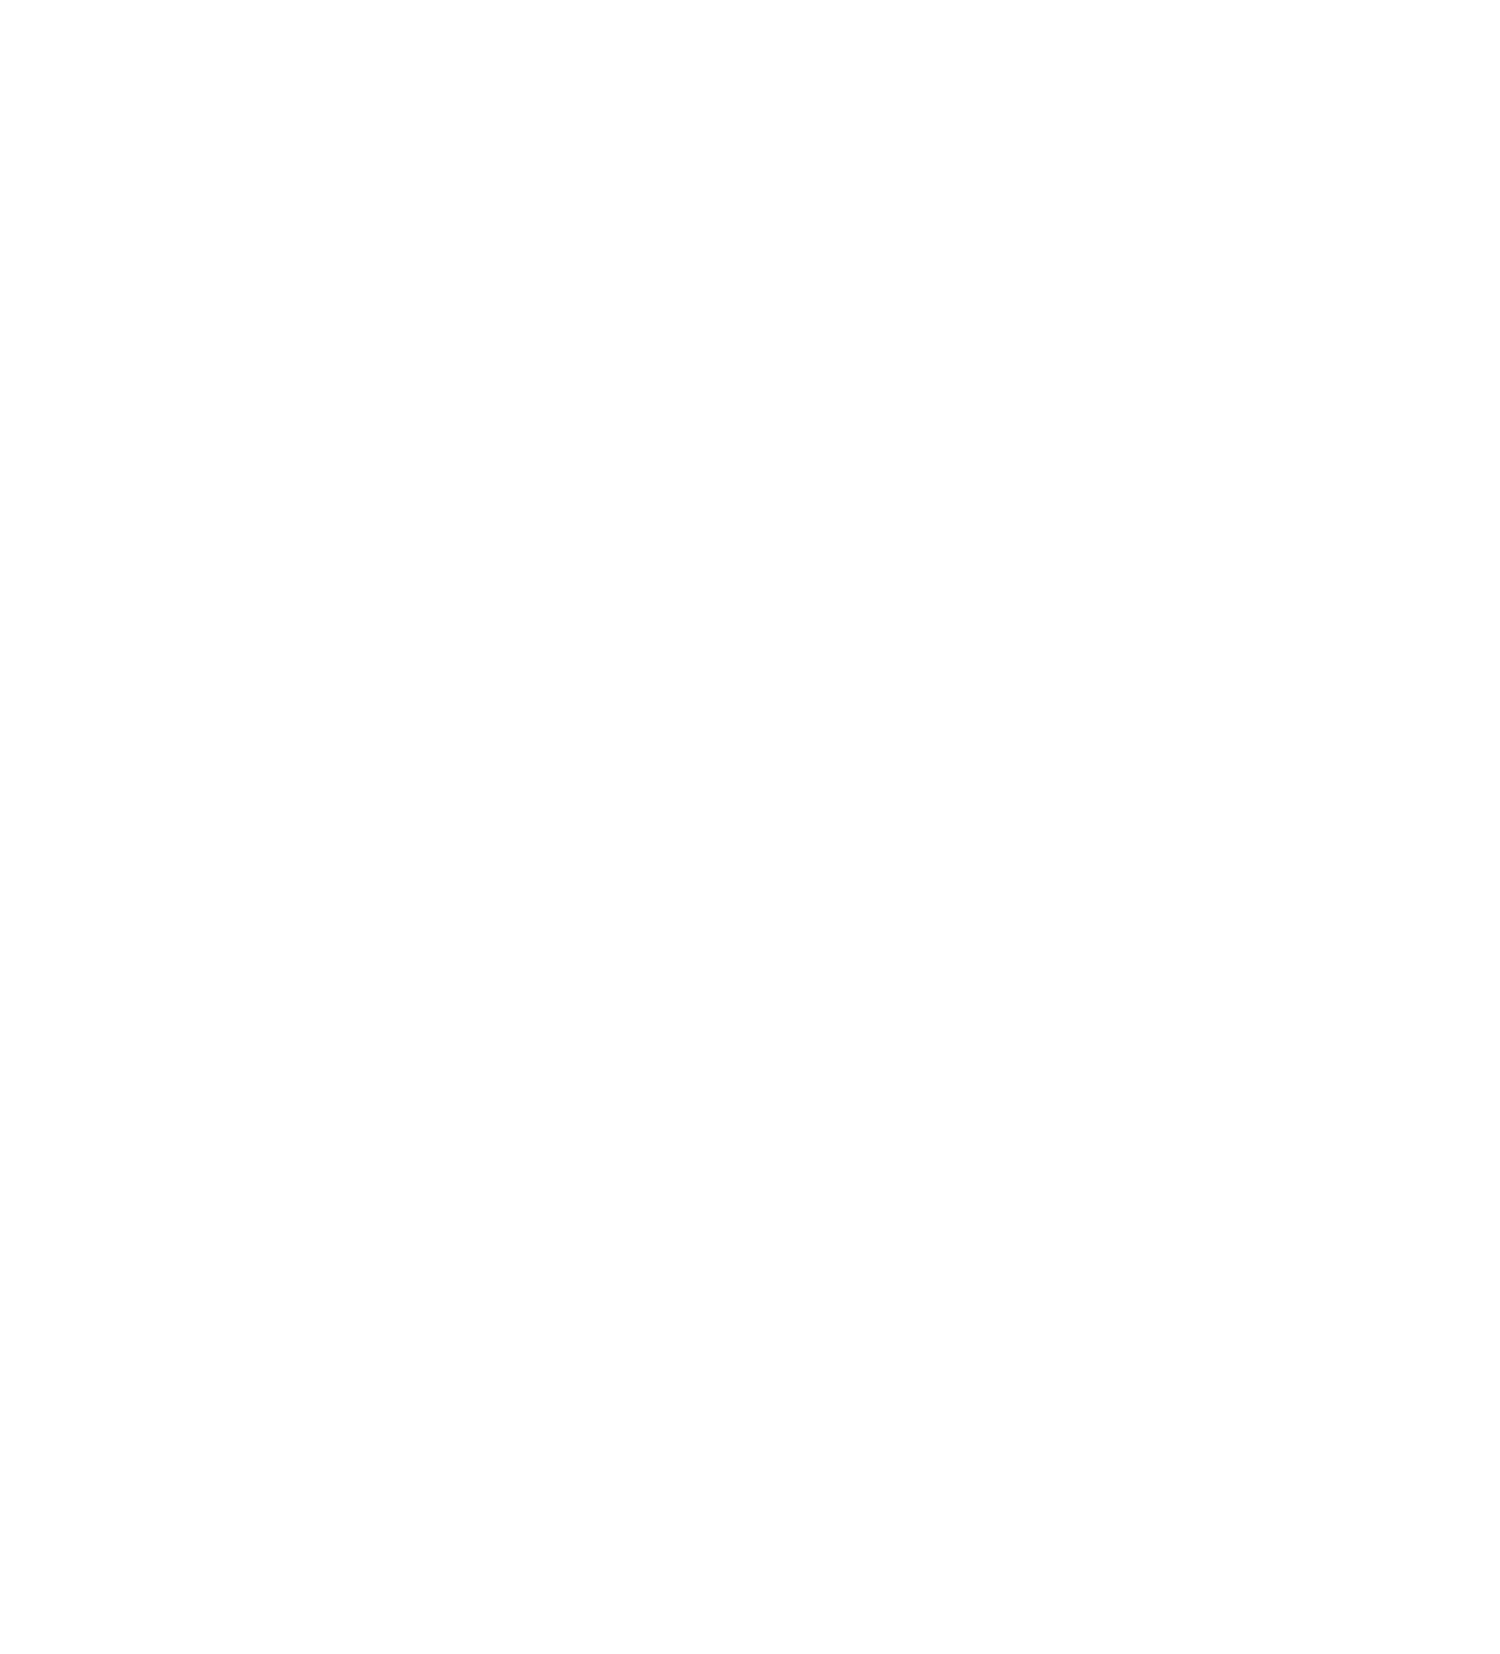 Mohawk Flower Farm